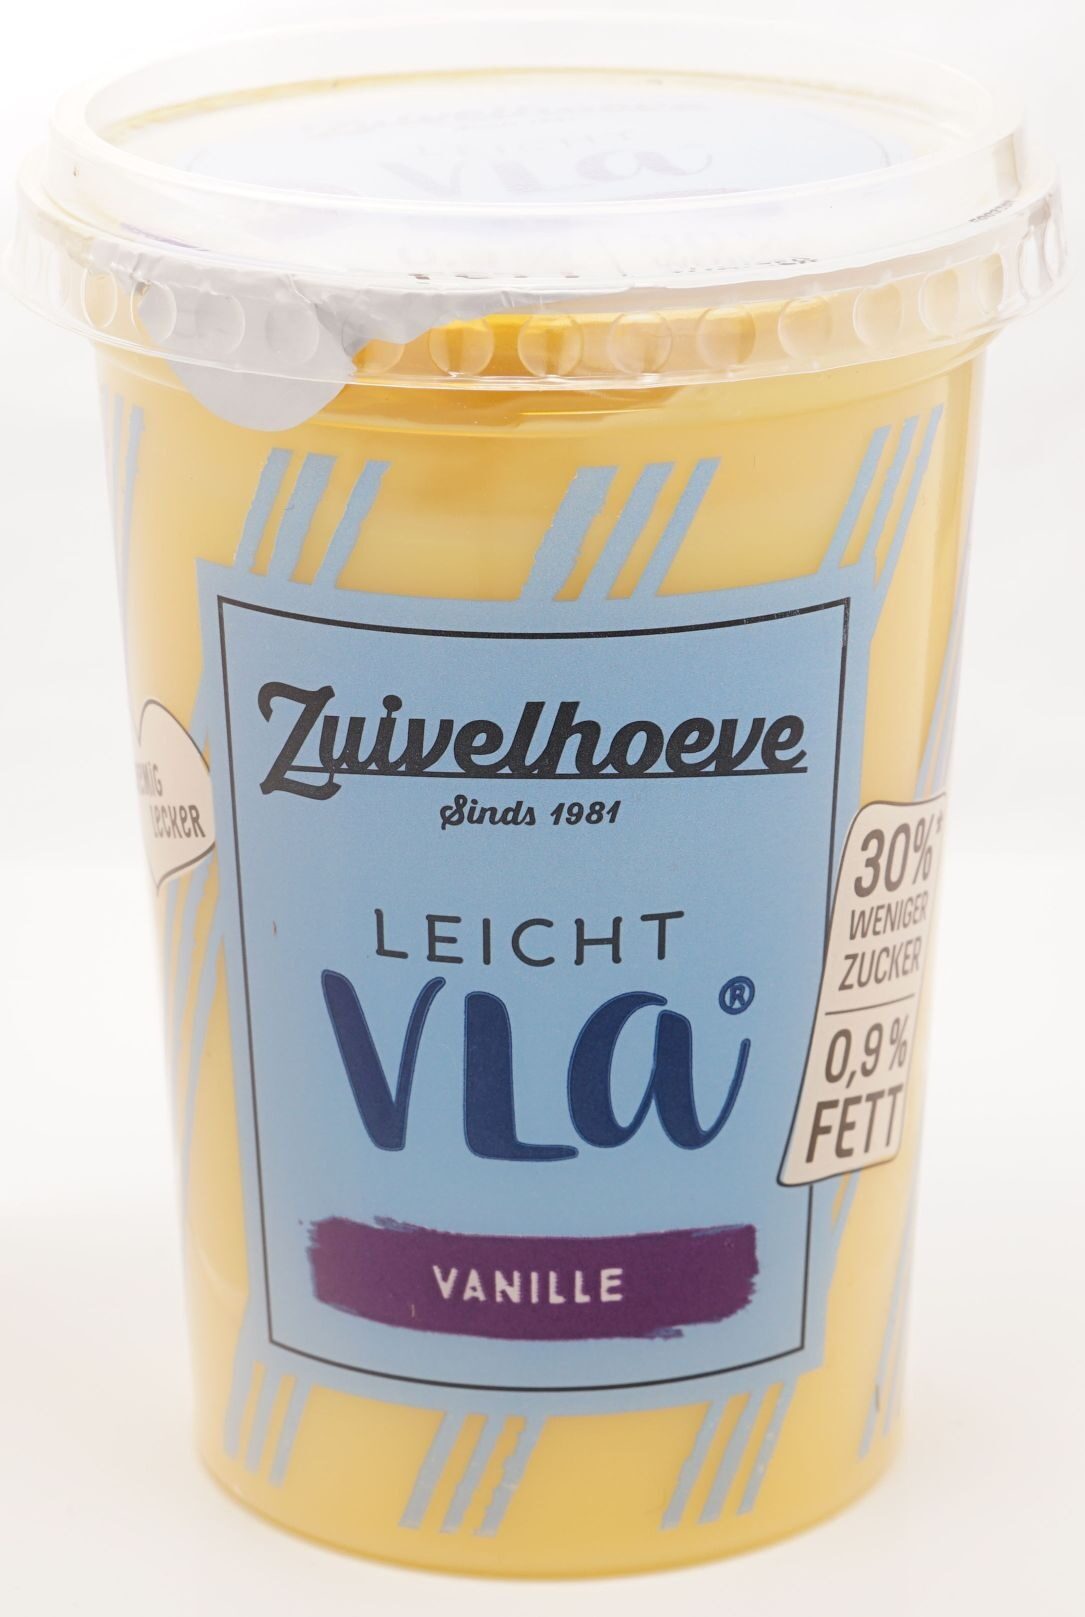 Vla Leicht Vanille - Product - de